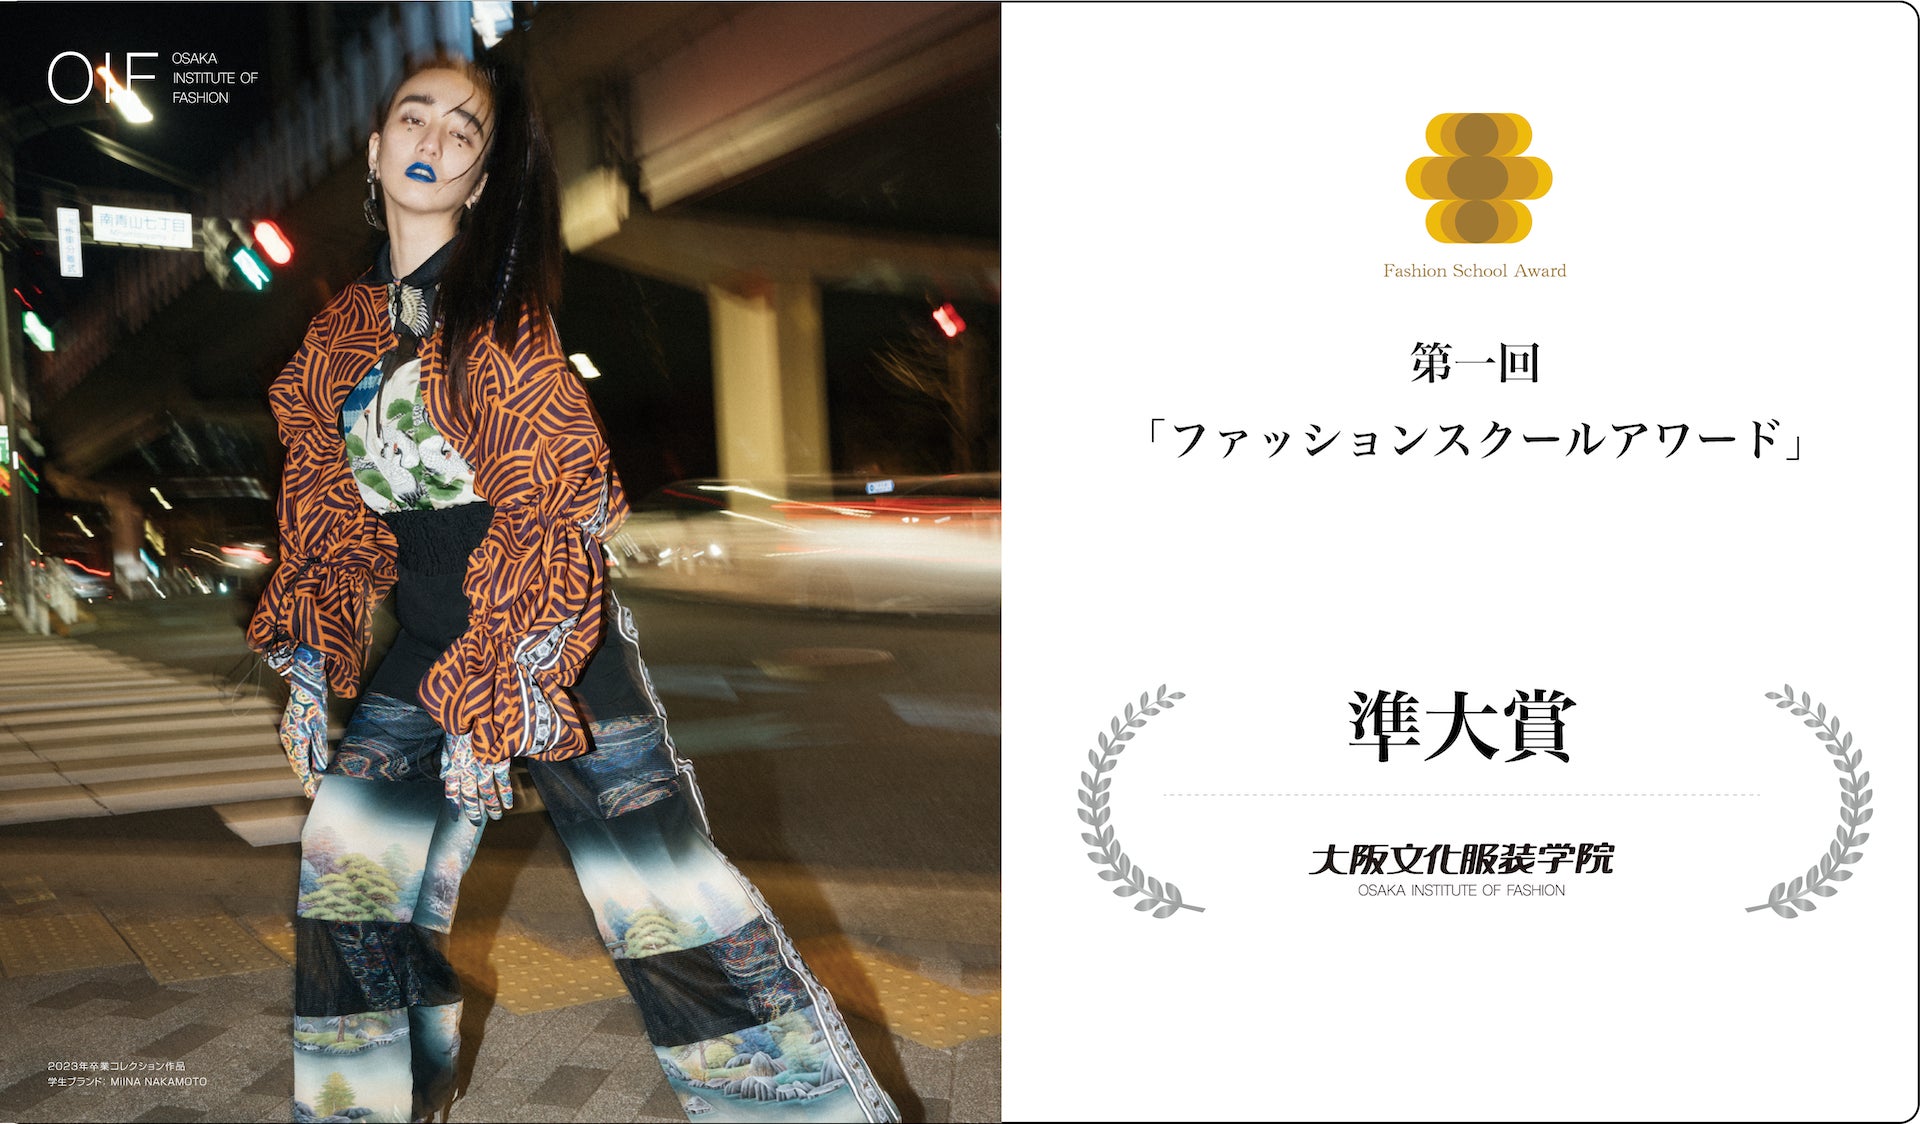 【大阪文化服装学院】繊研新聞主催「ファッションスクールアワード」で「準大賞」を受賞！